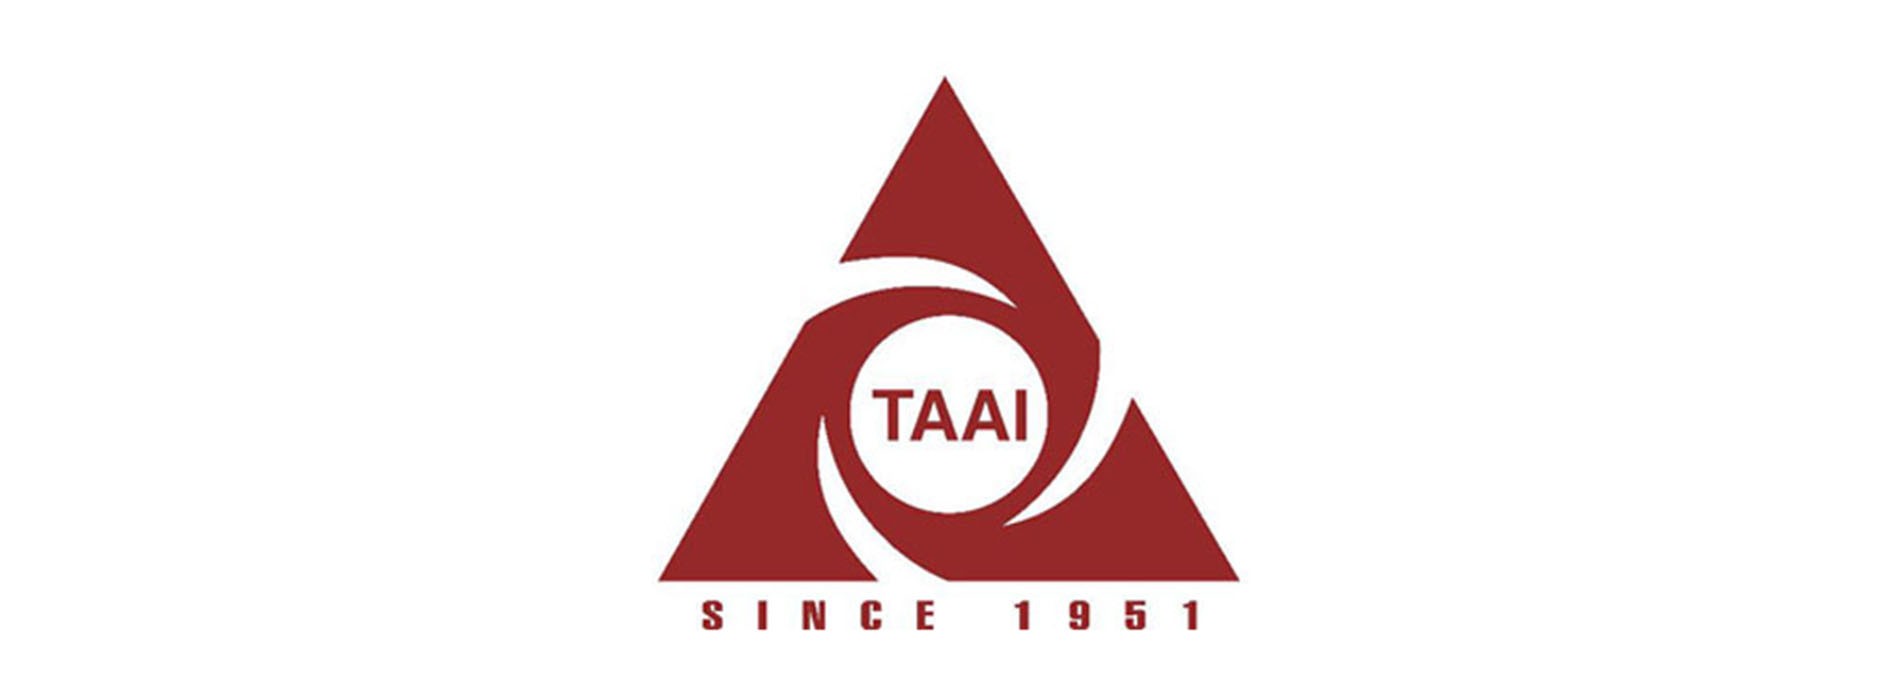 TAAI Welcomes MHA’s Move to Re-start Tourist-Visa